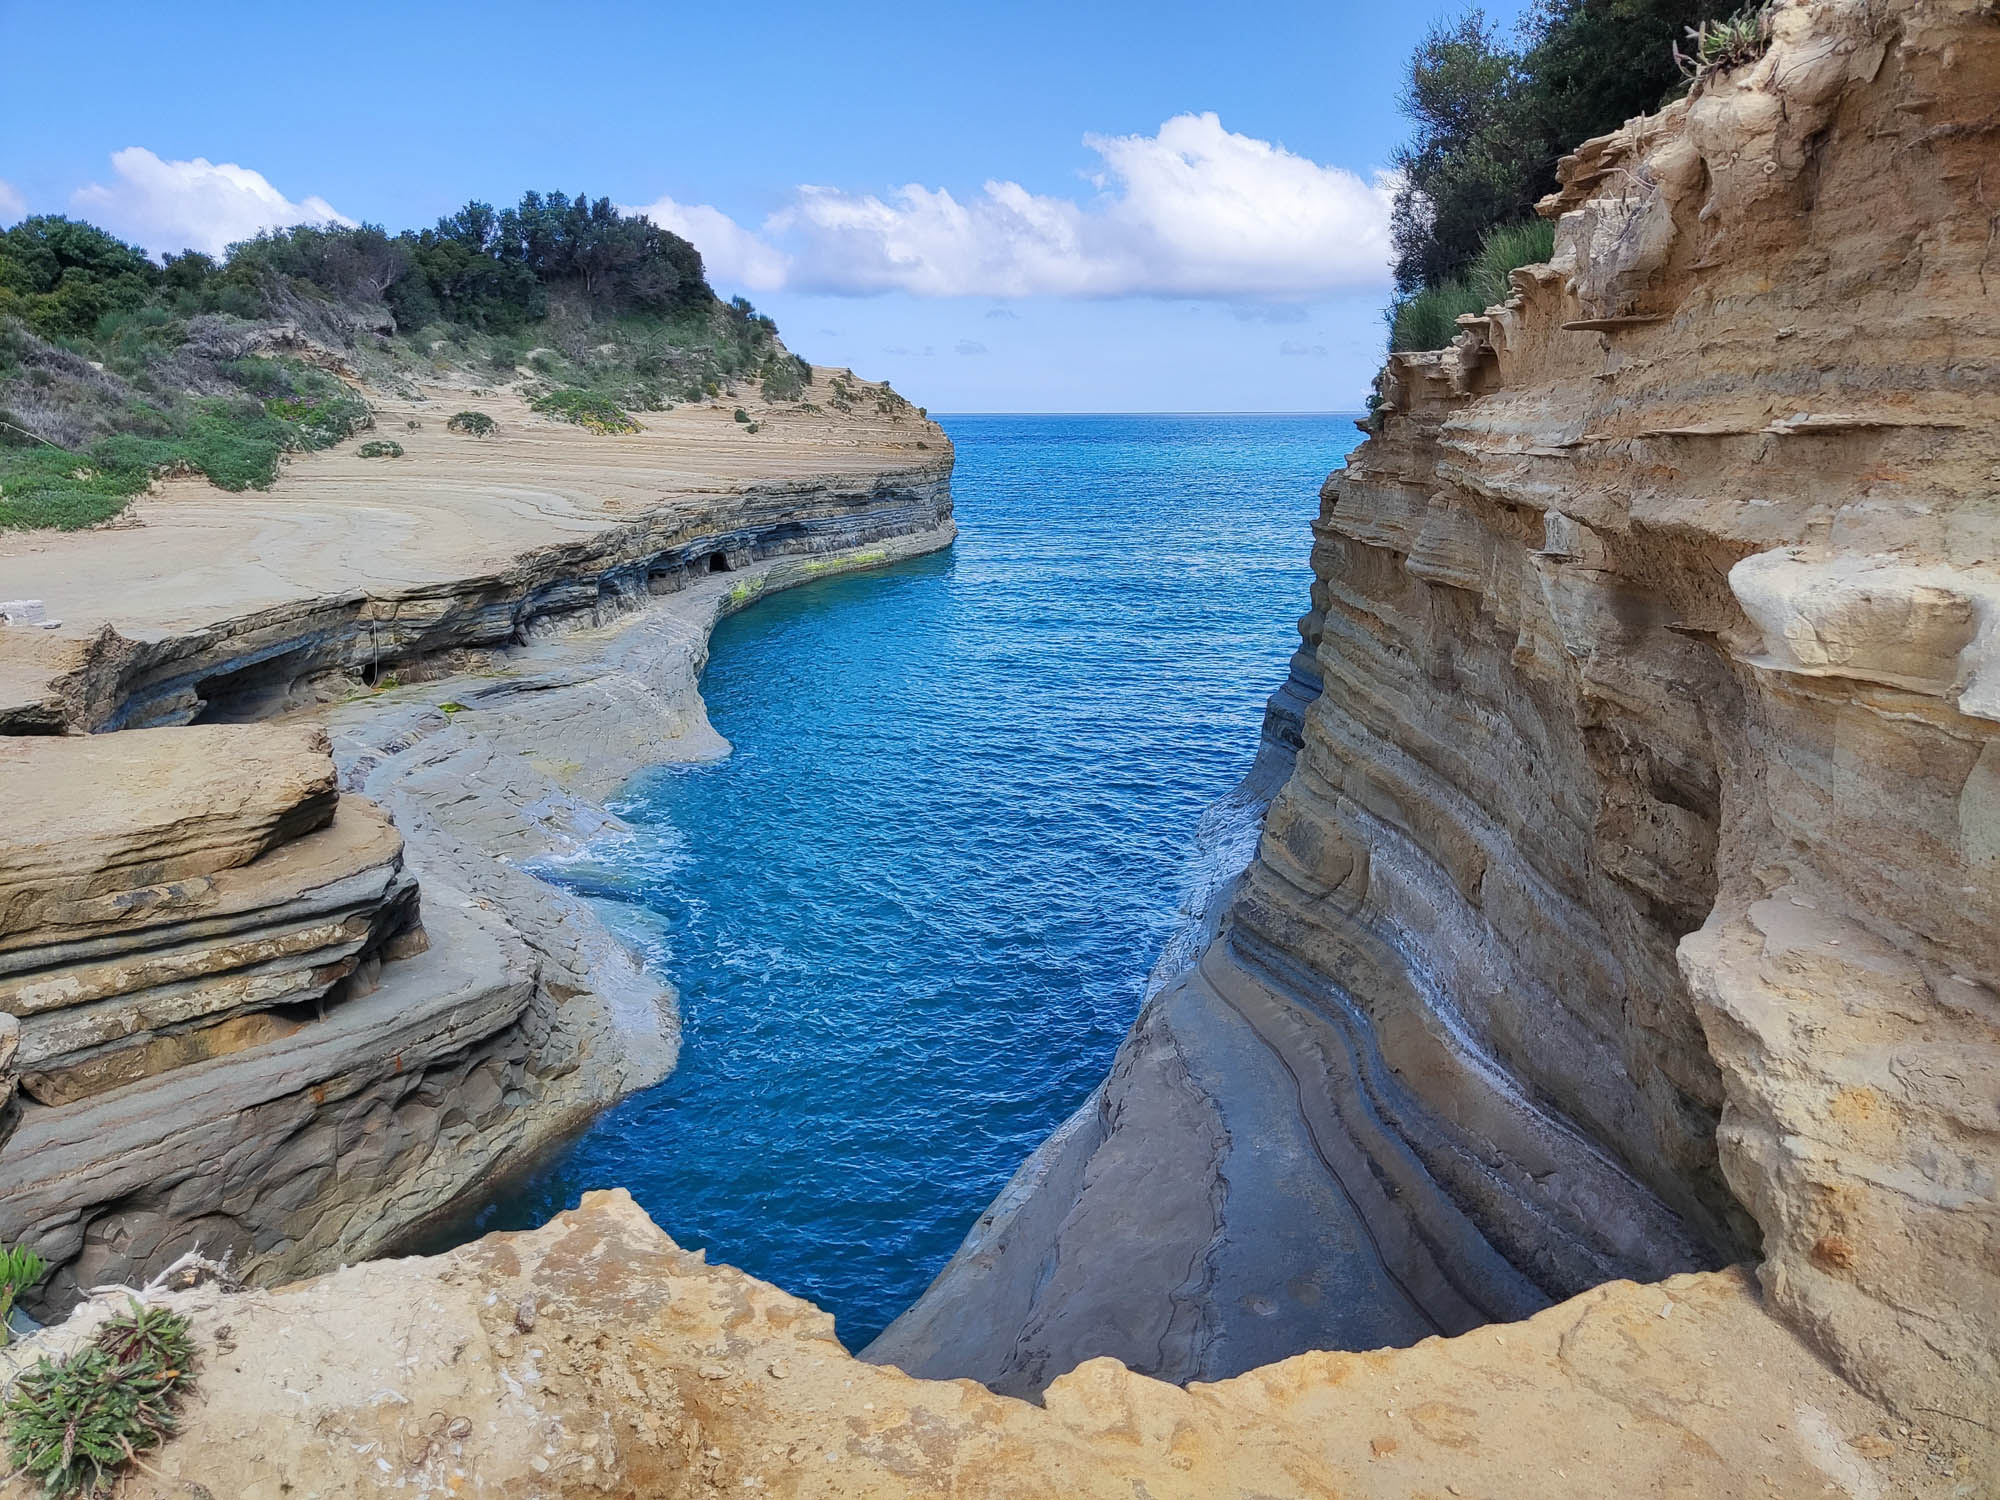 Kanał Miłości na Korfu z perspektywy skał od strony lądu. Przypominające sękacz skały piętrzą się nad wodą morską.